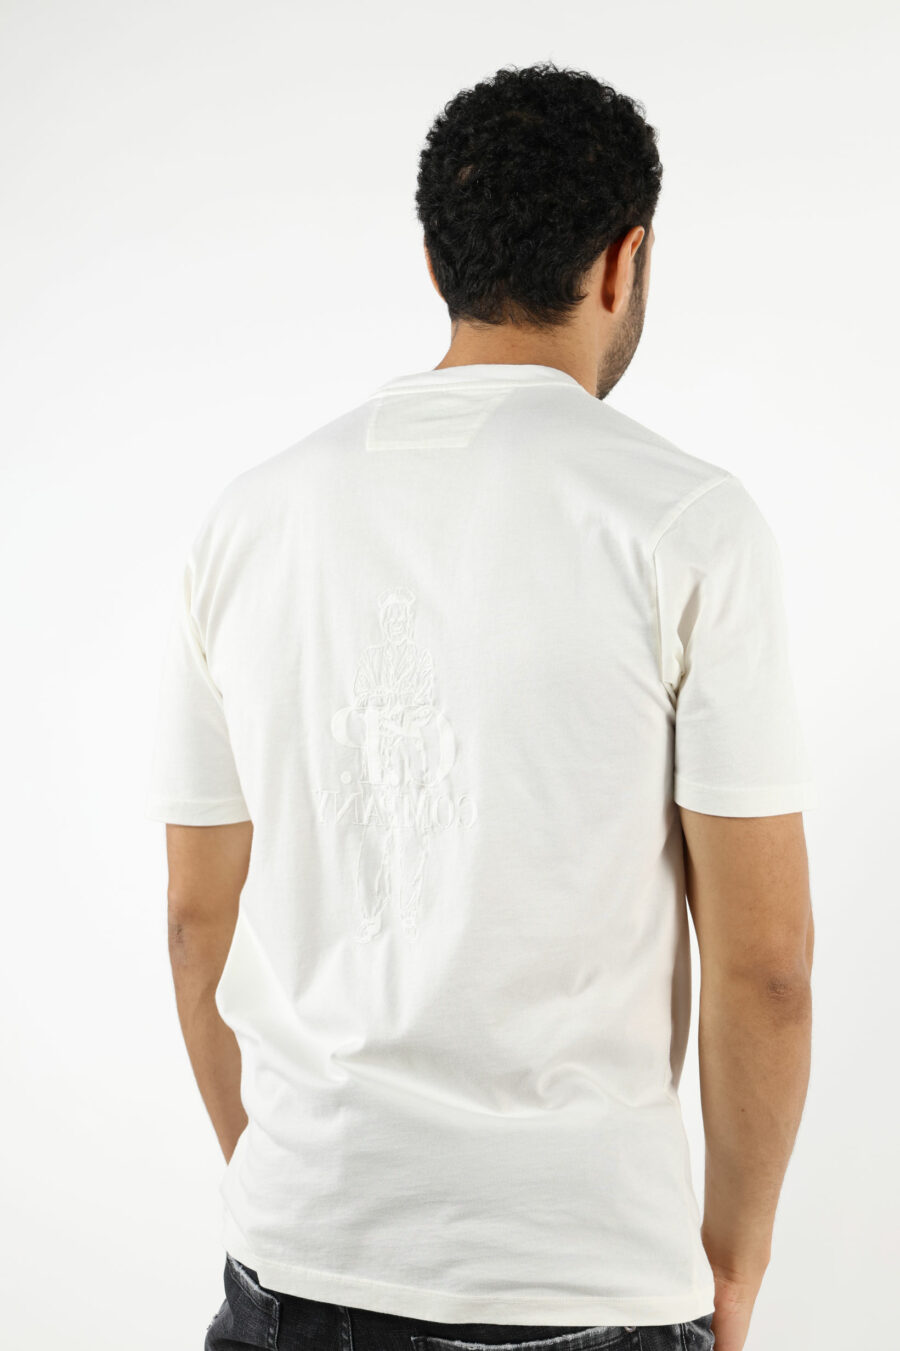 Camiseta blanca con maxilogo marinero y logo "cp" - 111301